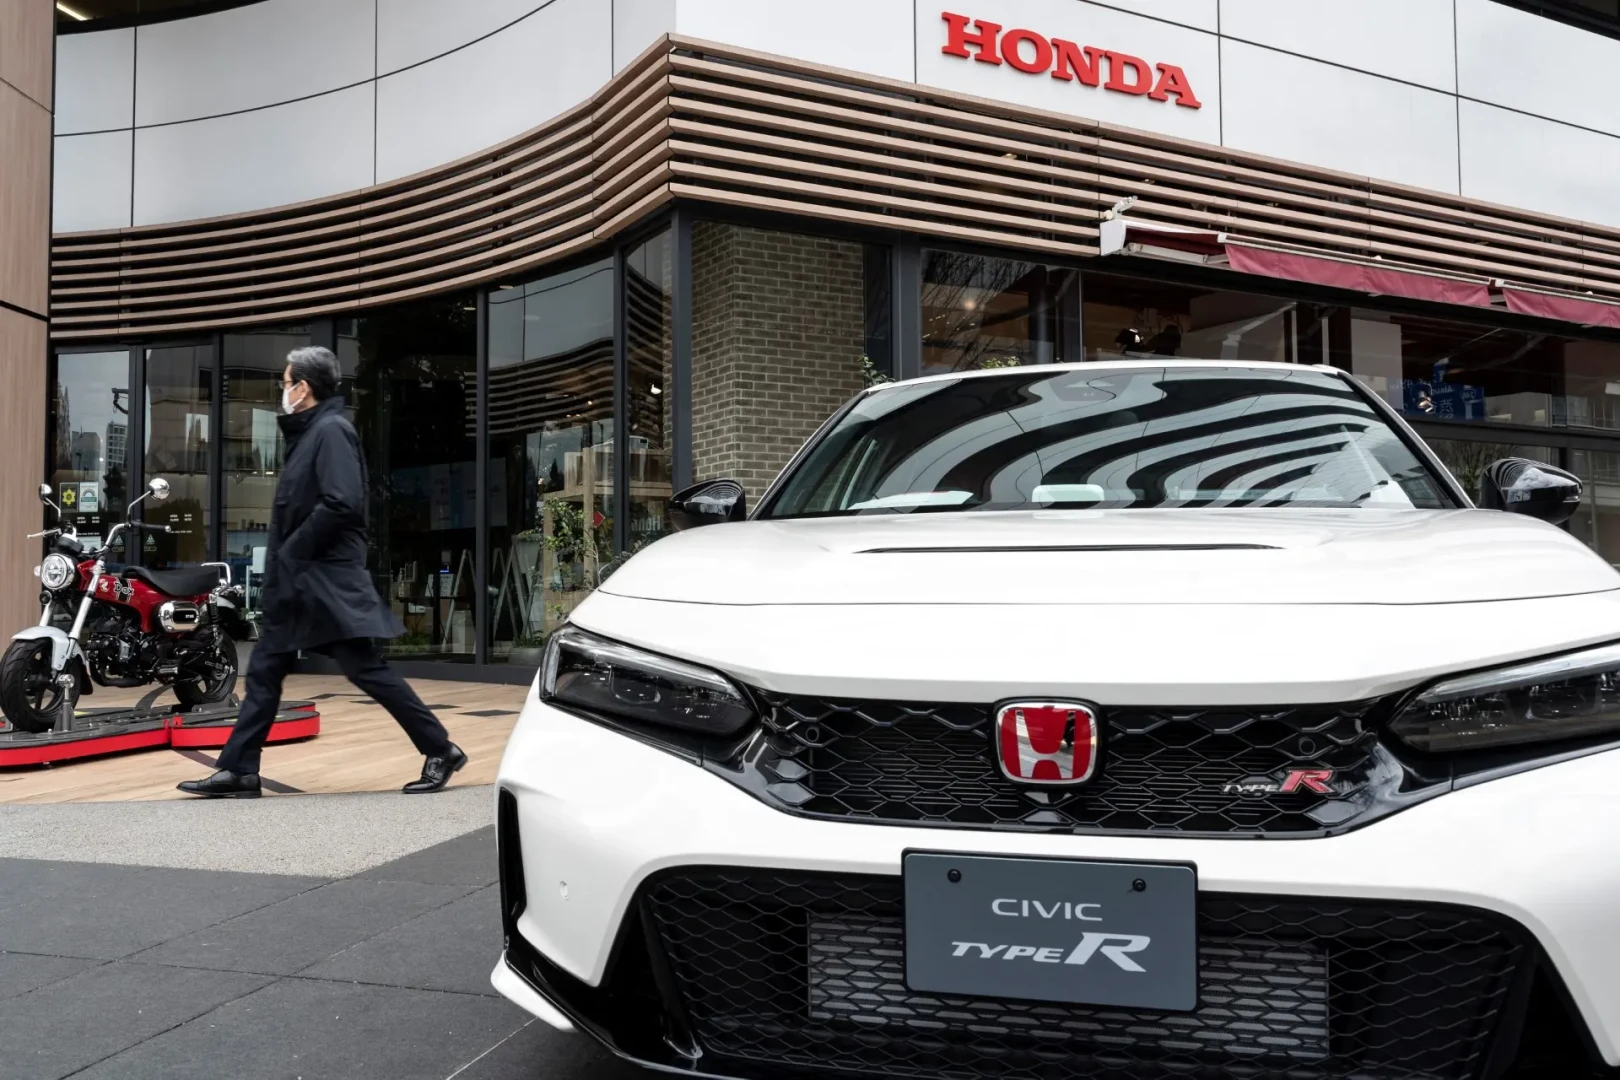 "هوندا" اليابانية تسحب 750 ألف سيارة في أمريكا